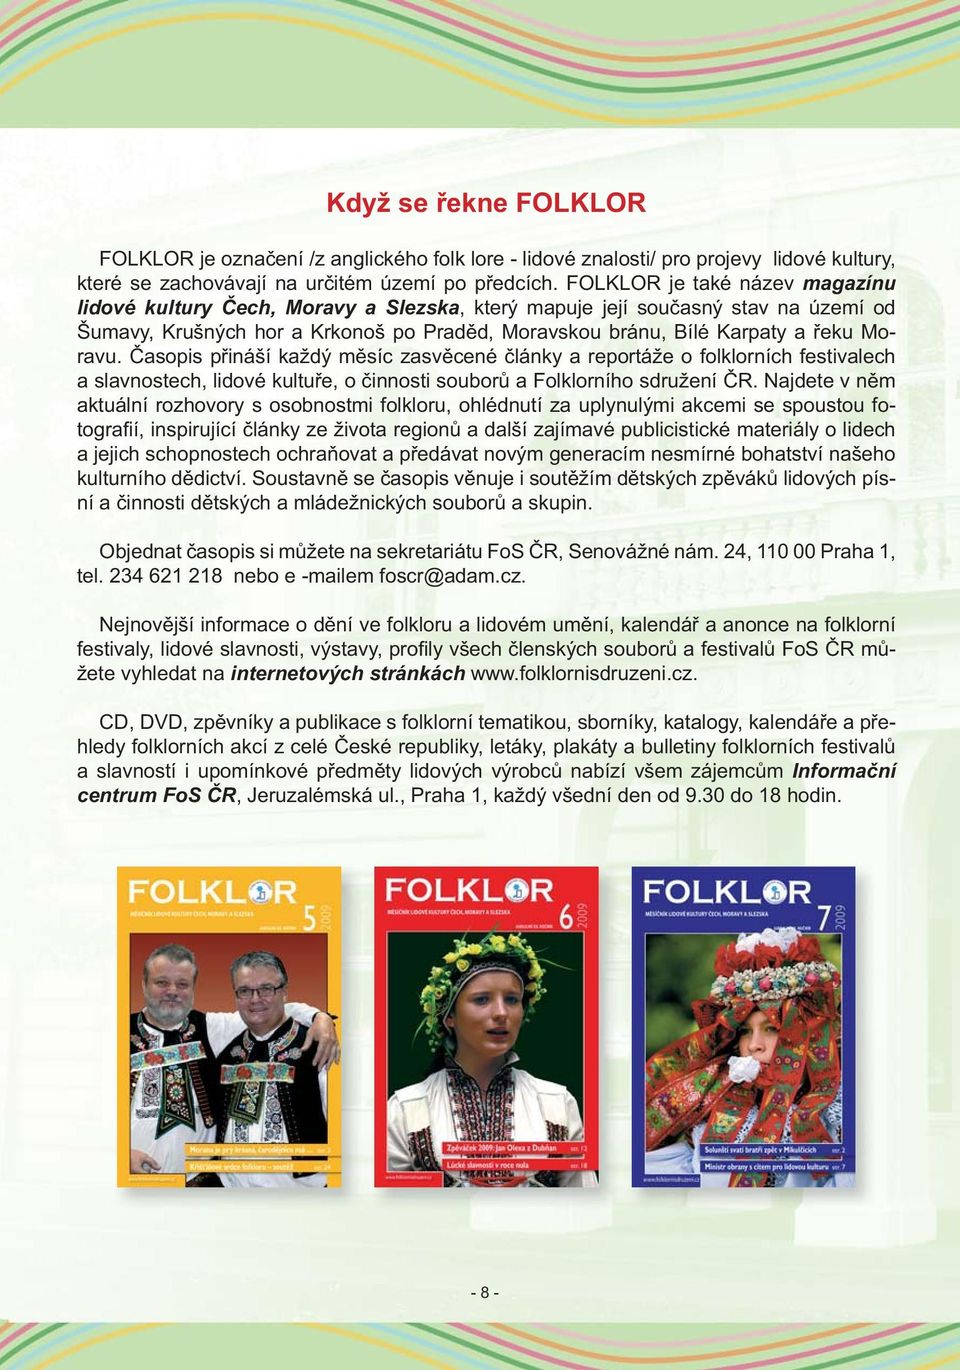 Časopis přináší každý měsíc zasvěcené články a reportáže o folklorních festivalech a slavnostech, lidové kultuře, o činnosti souborů a Folklorního sdružení ČR.